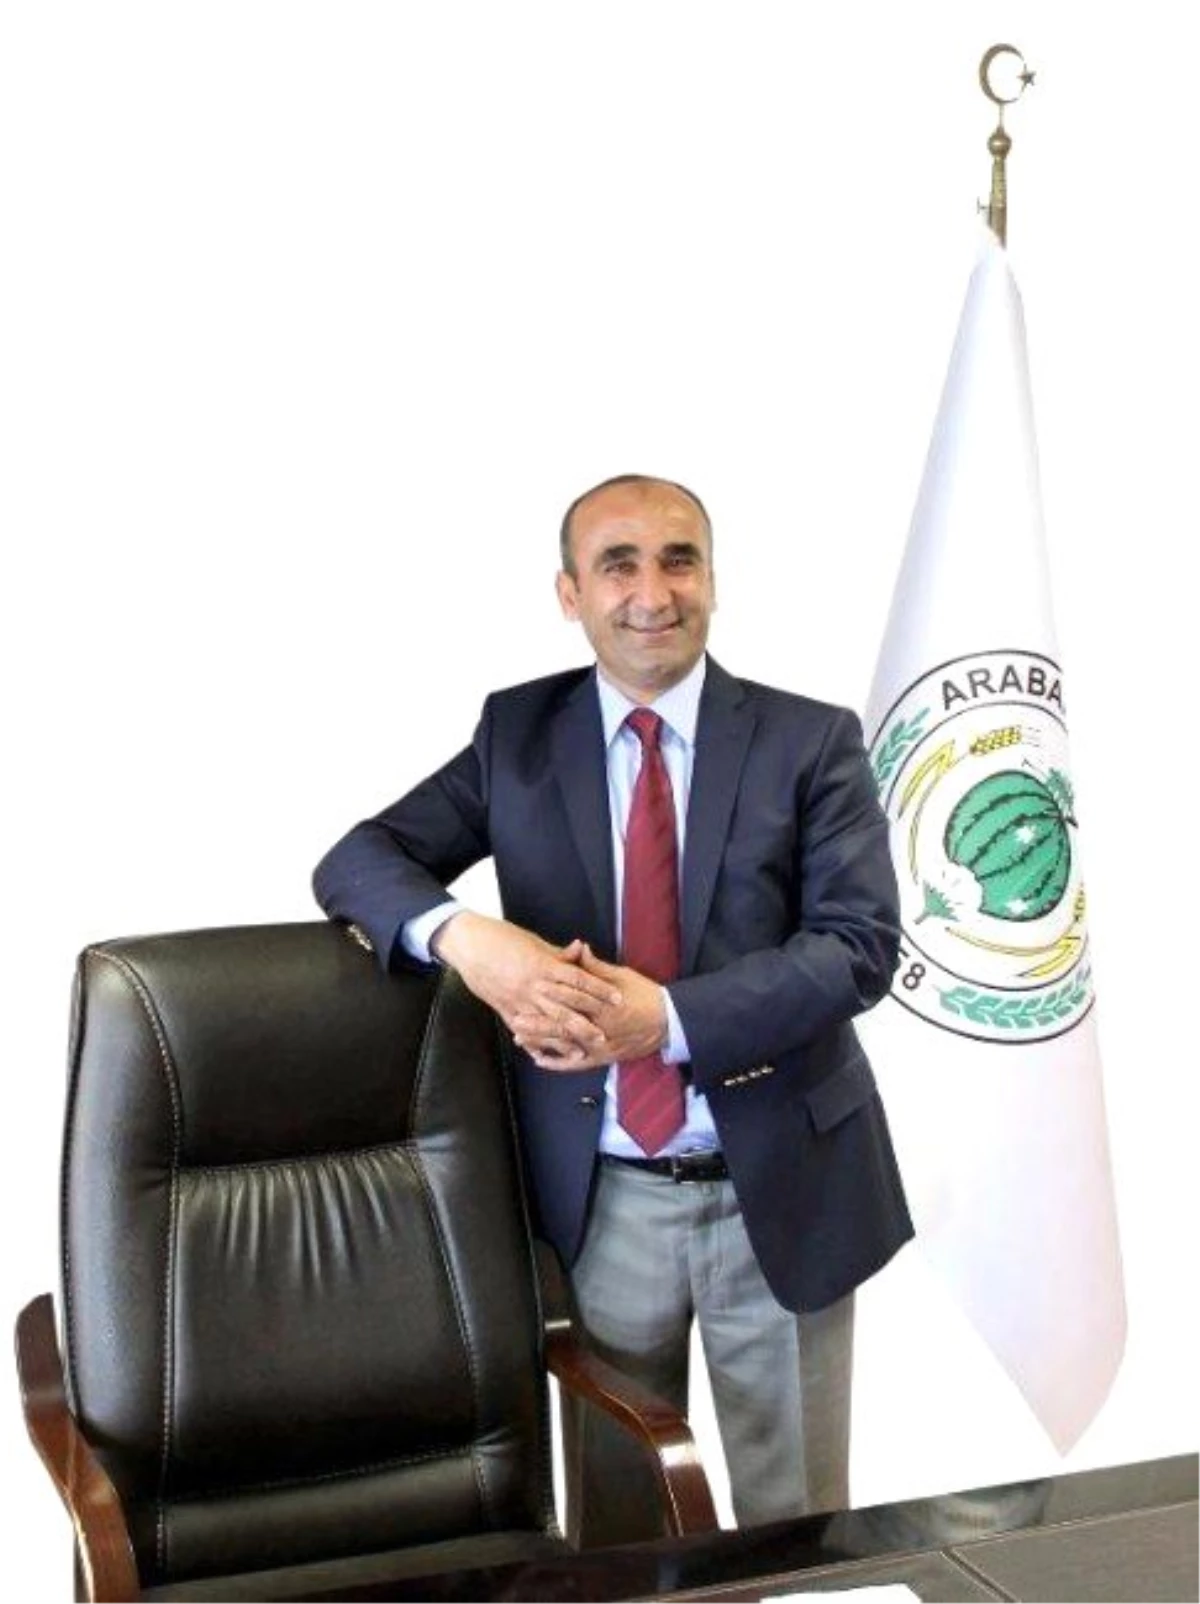 Araban Belediye Başkanı Mehmet Özdemir, 24 Kasım Öğretmenler Günü Münasebetiyle Kutlama Mesajı...